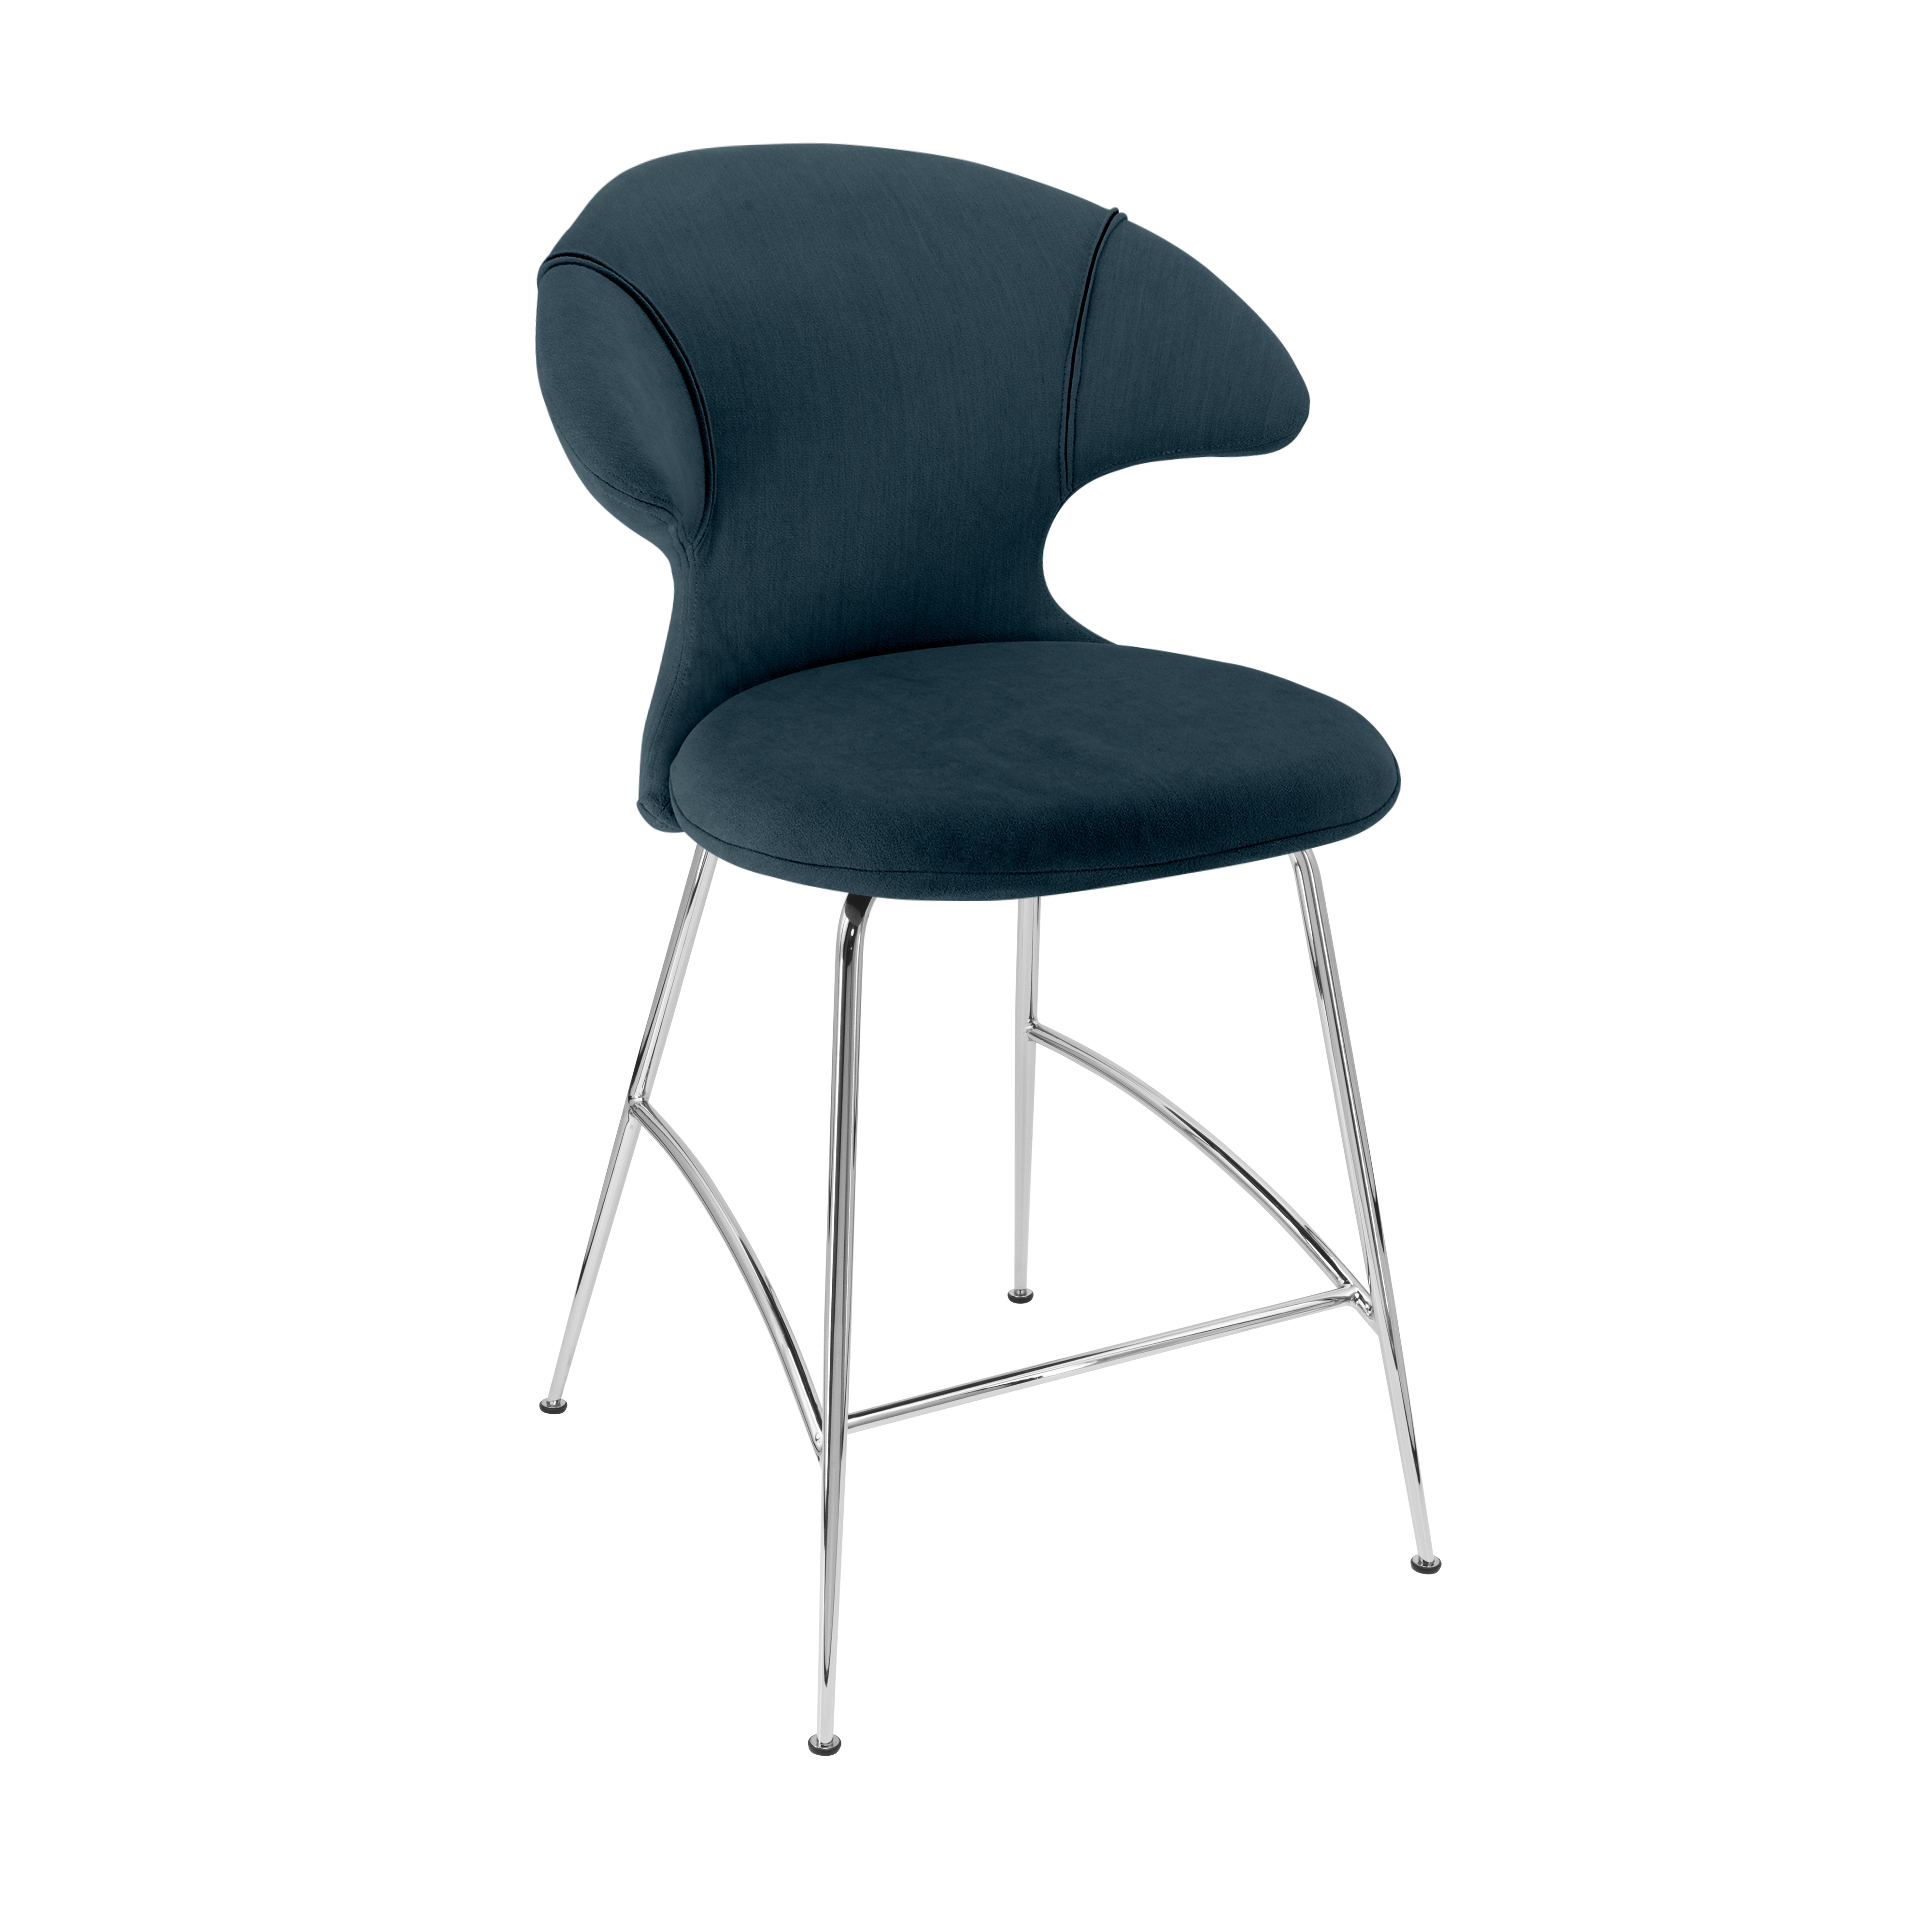 Time Flies Counter Stuhl in Jet Air Blue präsentiert im Onlineshop von KAQTU Design AG. Barstuhl mit Armlehne ist von Umage